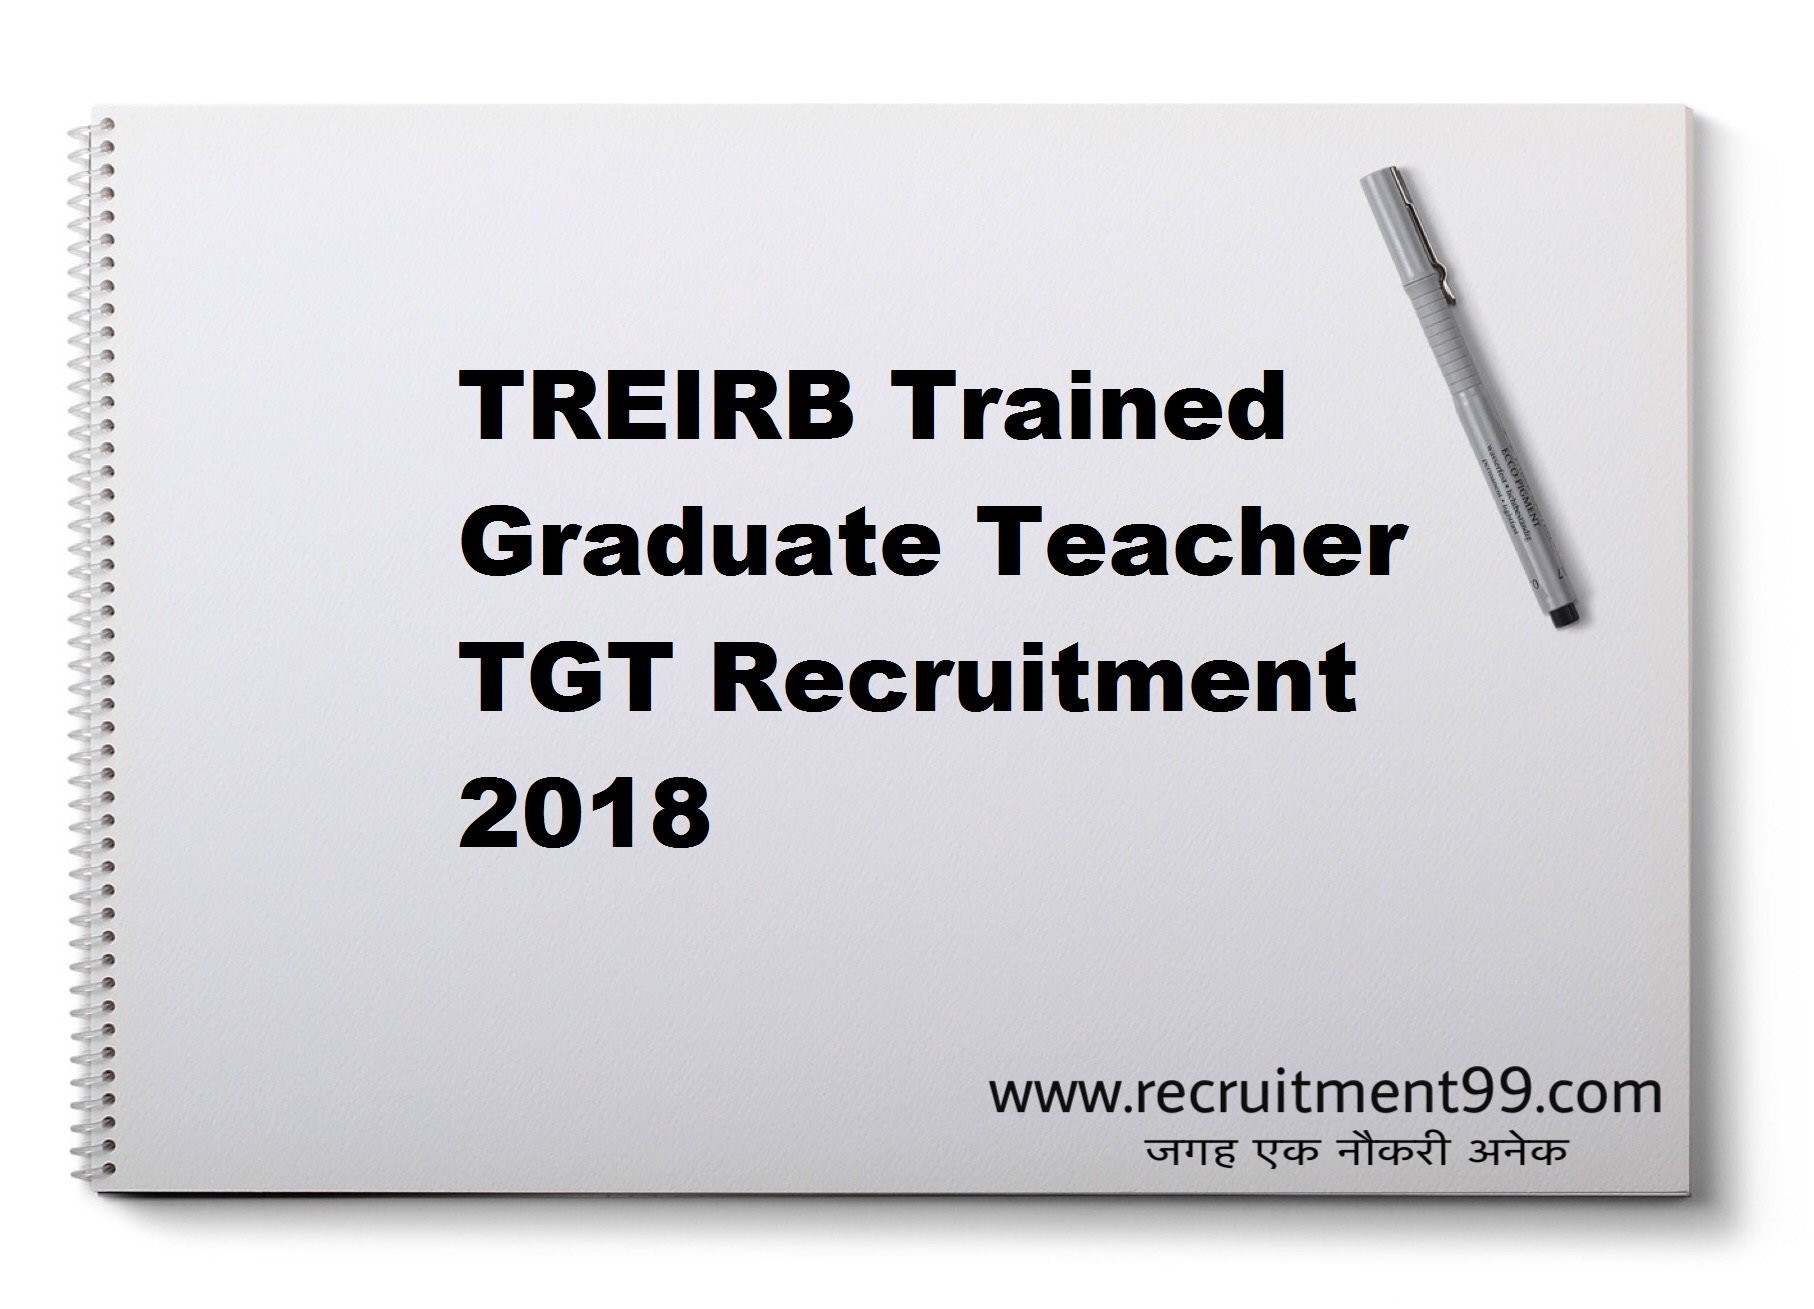 TREIRB TGT Recruitment Hall Ticket Result 2018